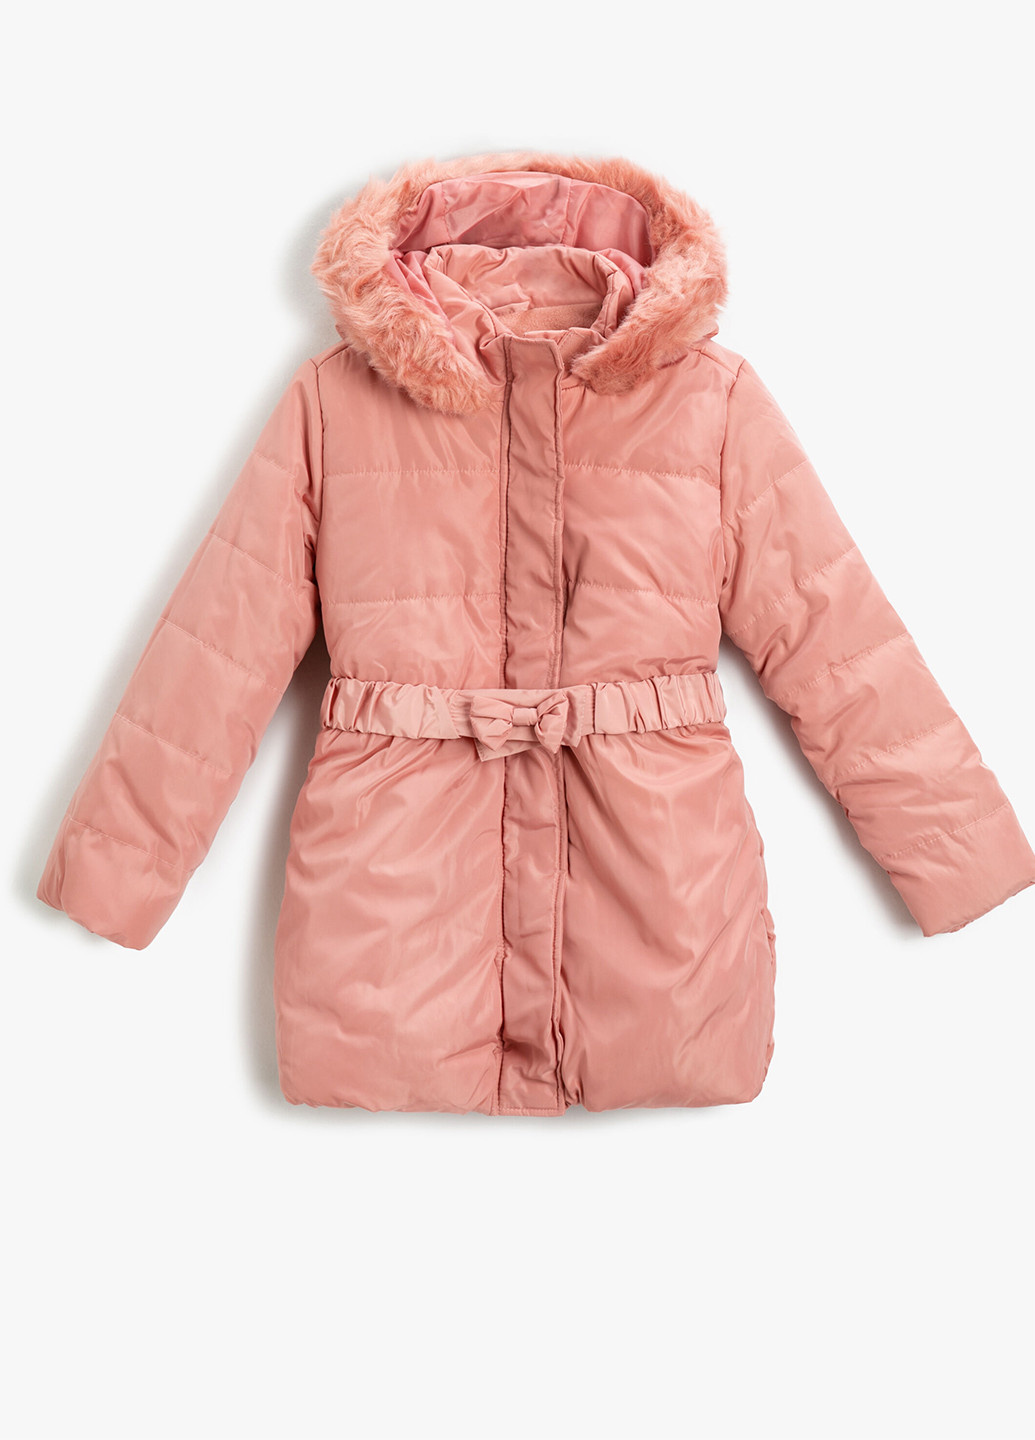 Розовая демисезонная куртка куртка-пальто KOTON